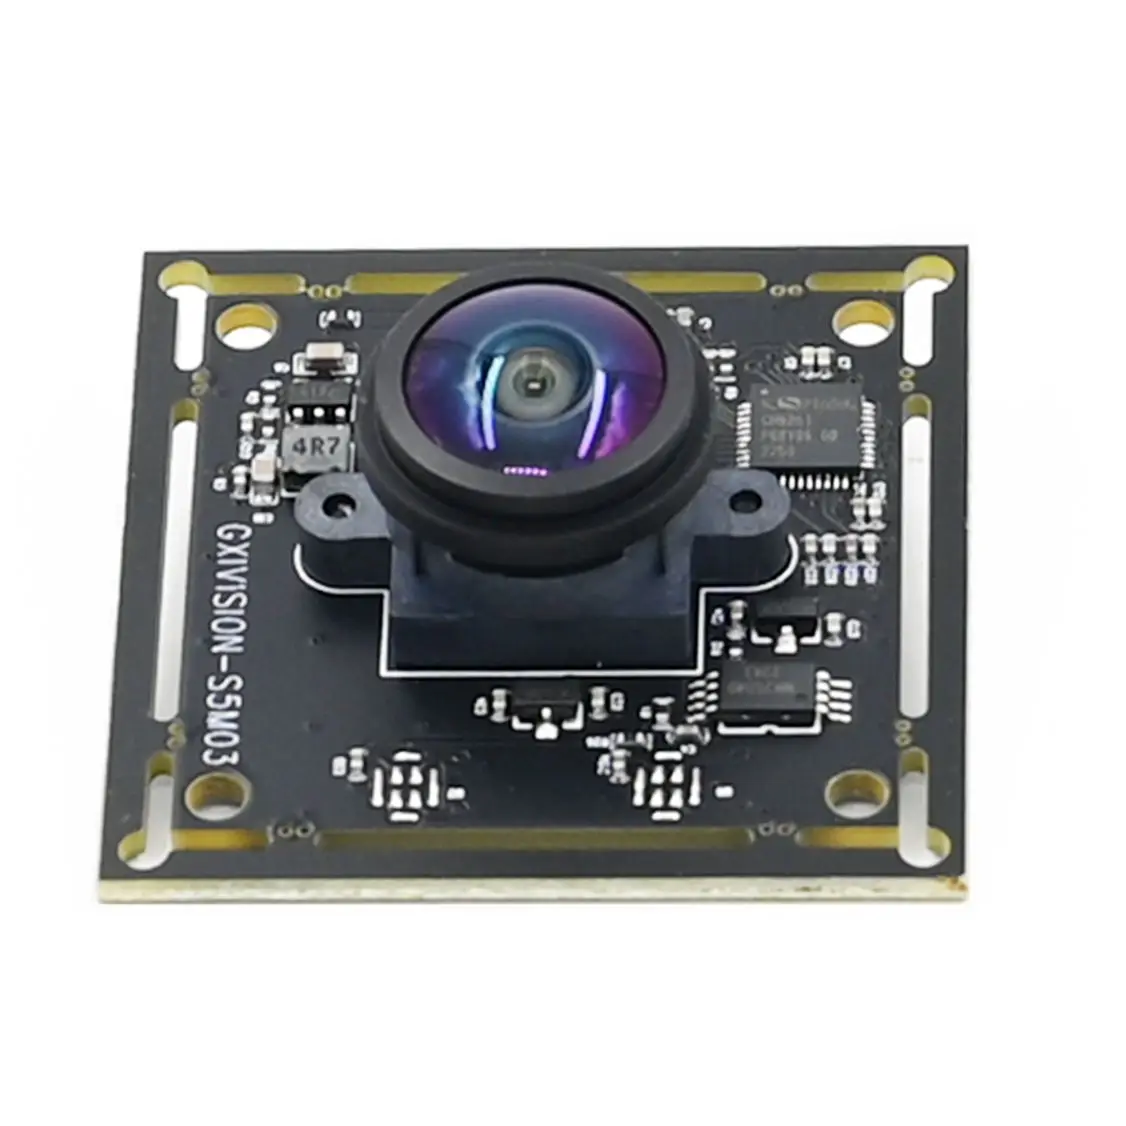 5MP moduł kamery USB OV5693 30FPS 5-megapikselowa kamera internetowa 2592x194 stała gęstość wiązki M12 obiektyw do laptopa Android Raspberry Pi